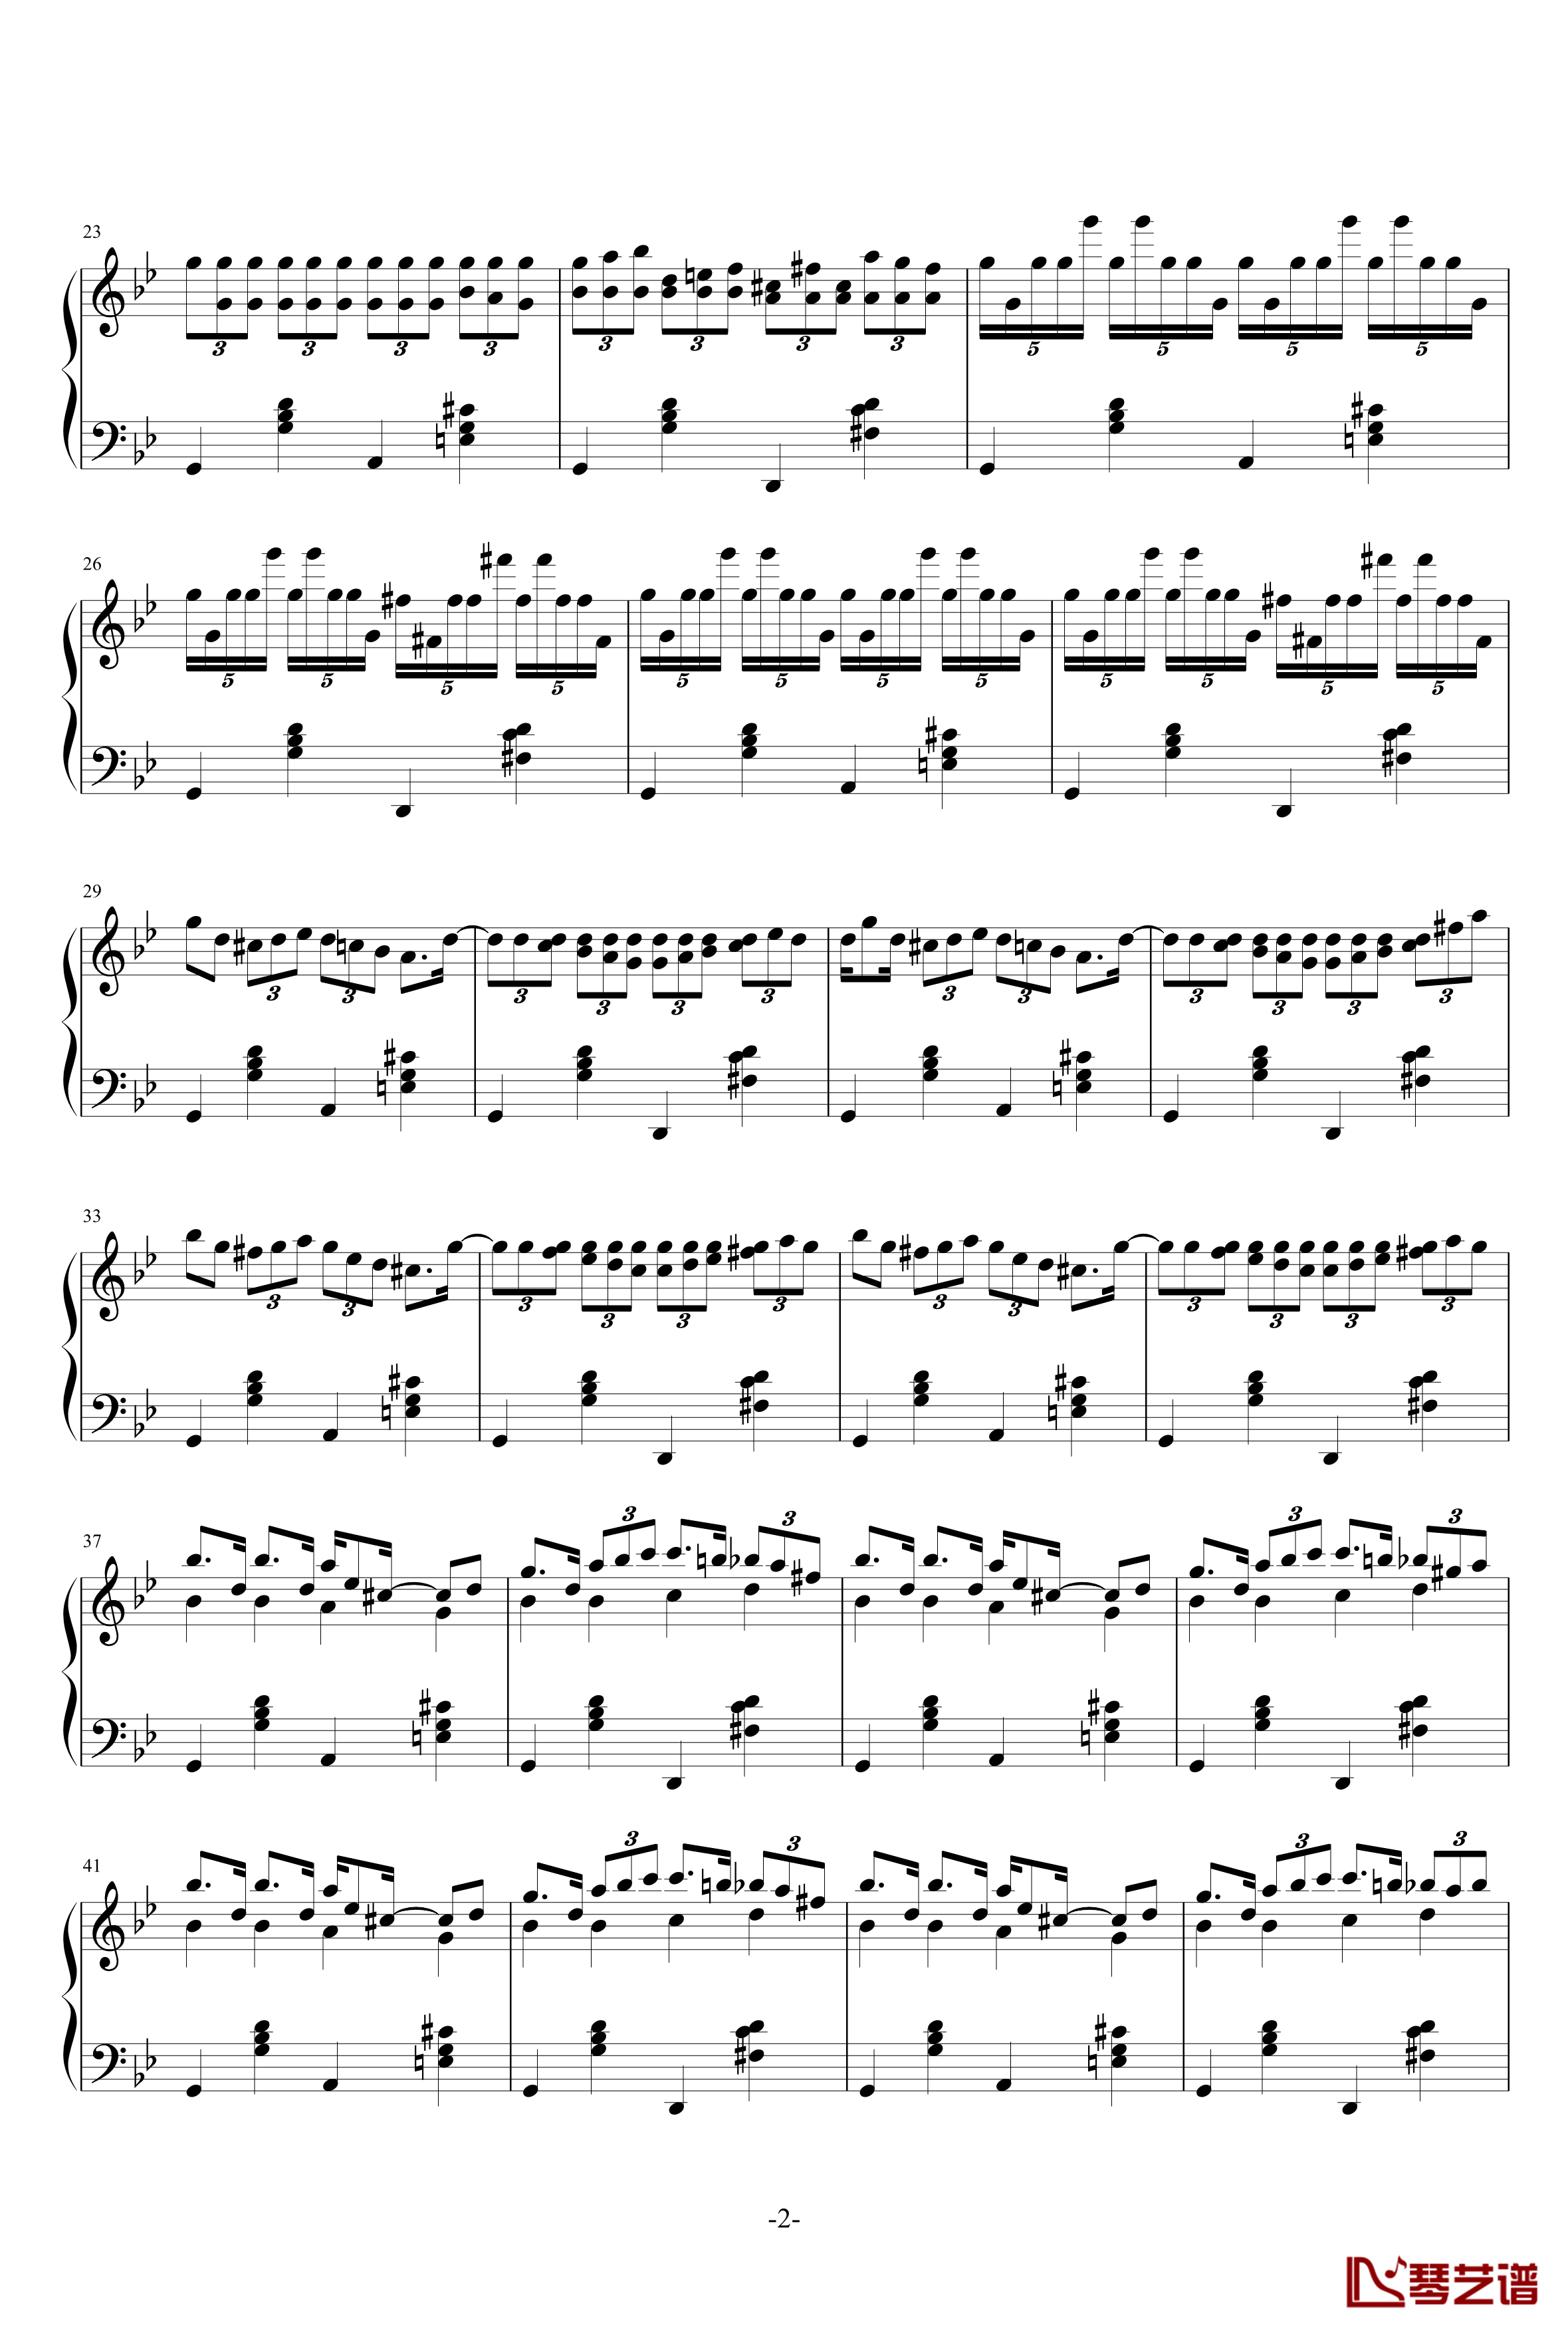 无题曲钢琴谱-乐之琴2